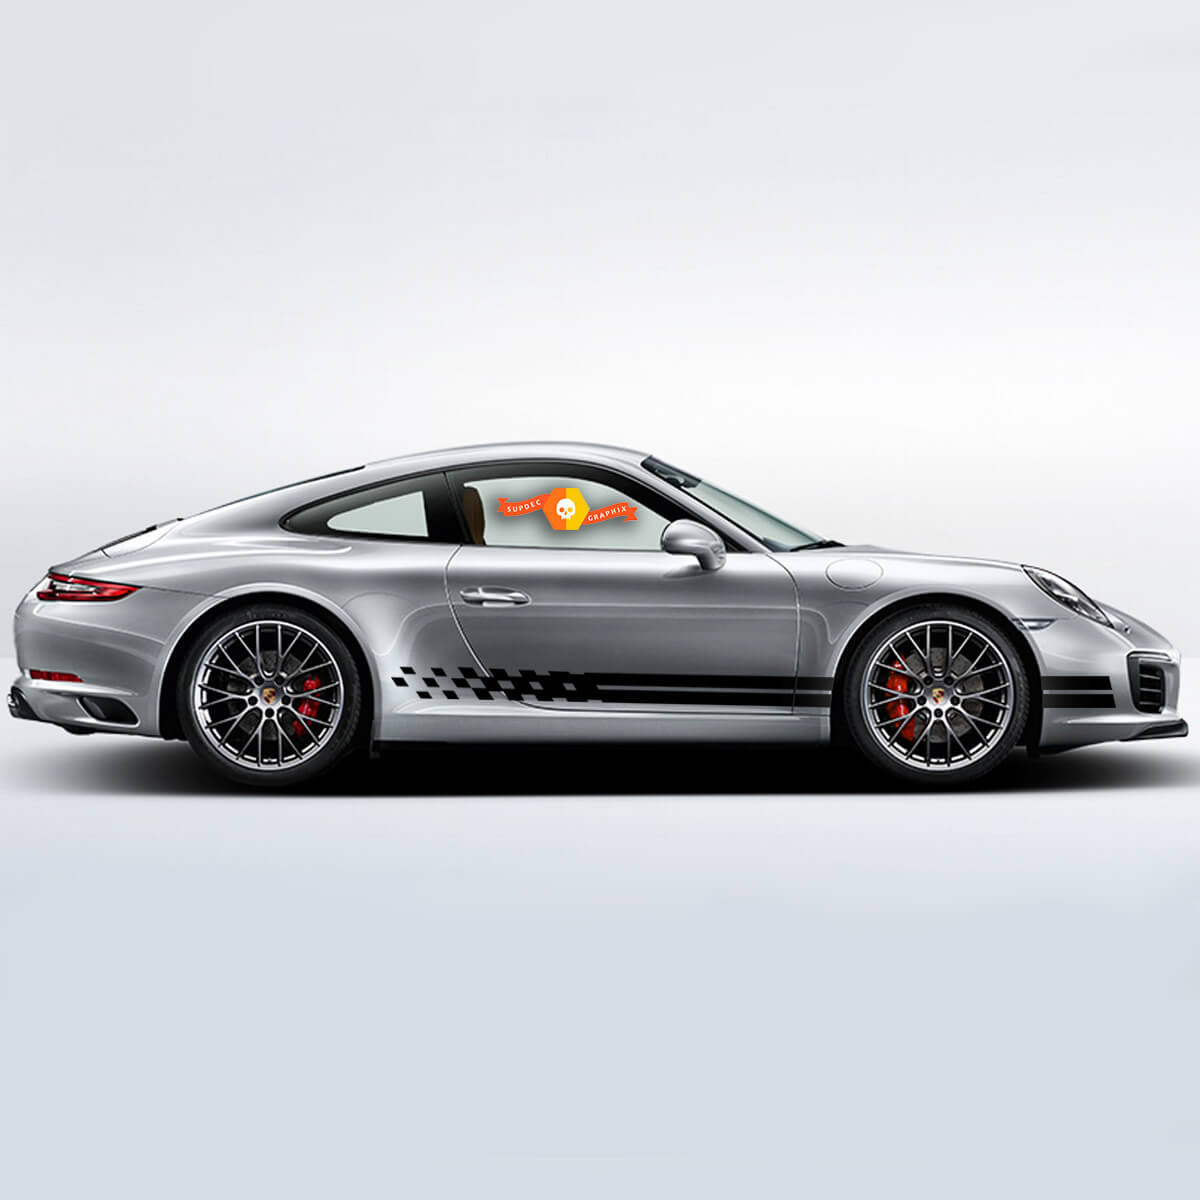 Porsche Rocker Panel Racing Turbo Seite Seitenstreifen Aufkleber